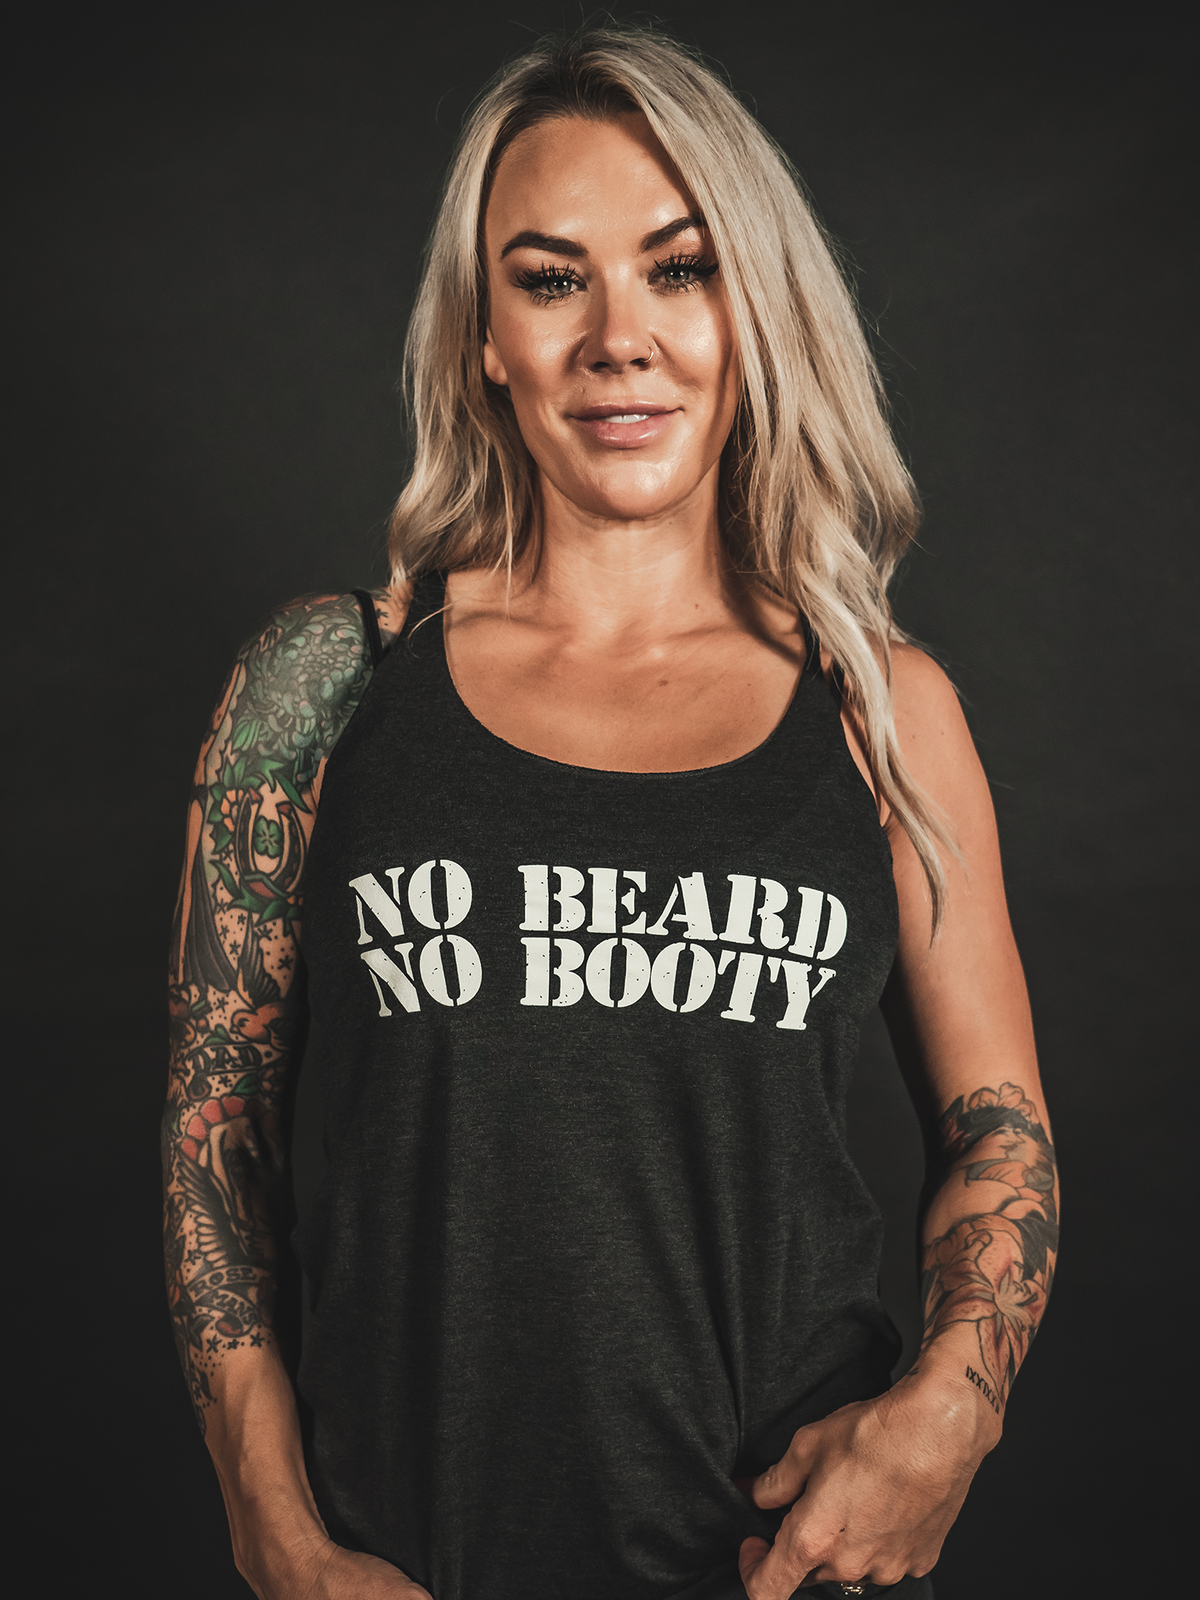 NO BEARD NO BOOTY Womens Tank - Lions Not Sheep ®